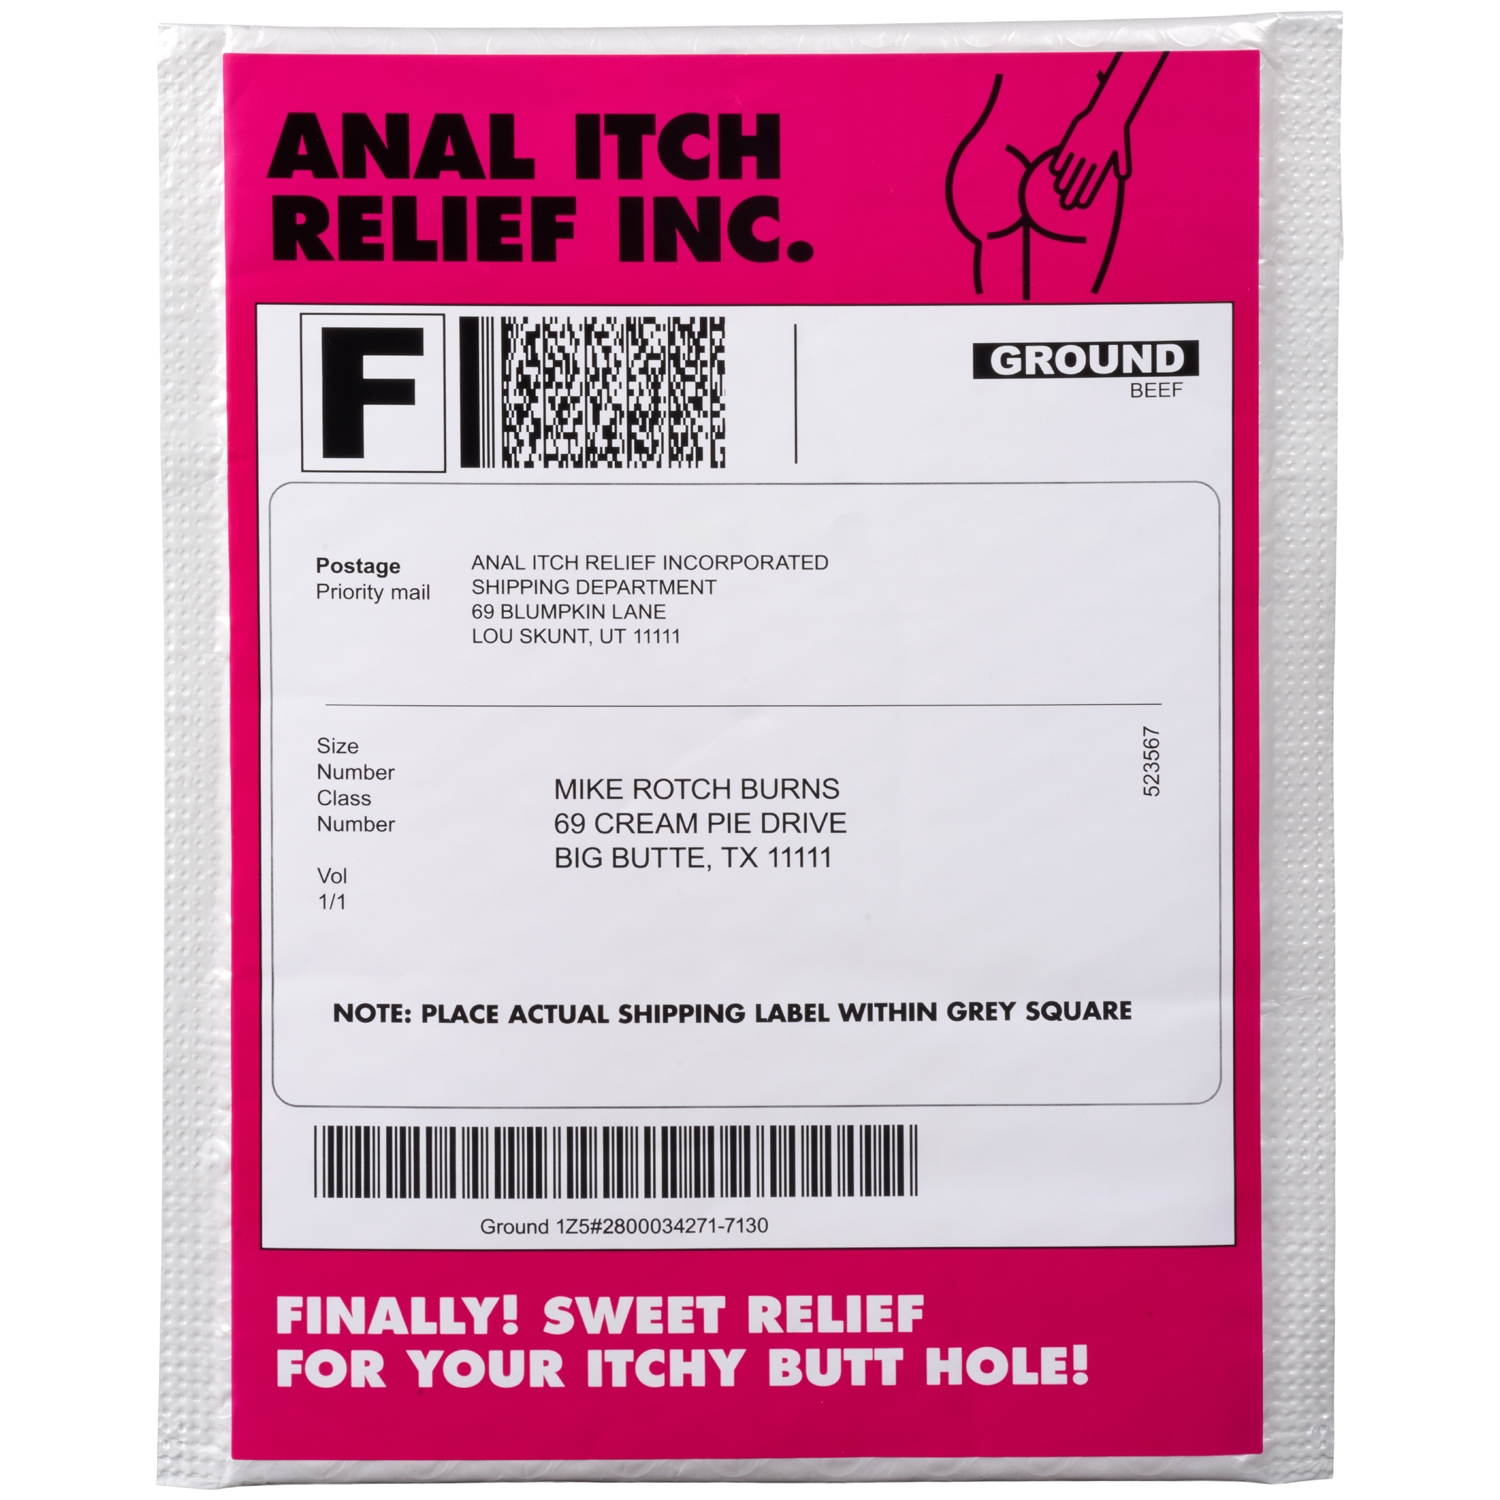 Frisky Anal Itch Relief Inc. Prank